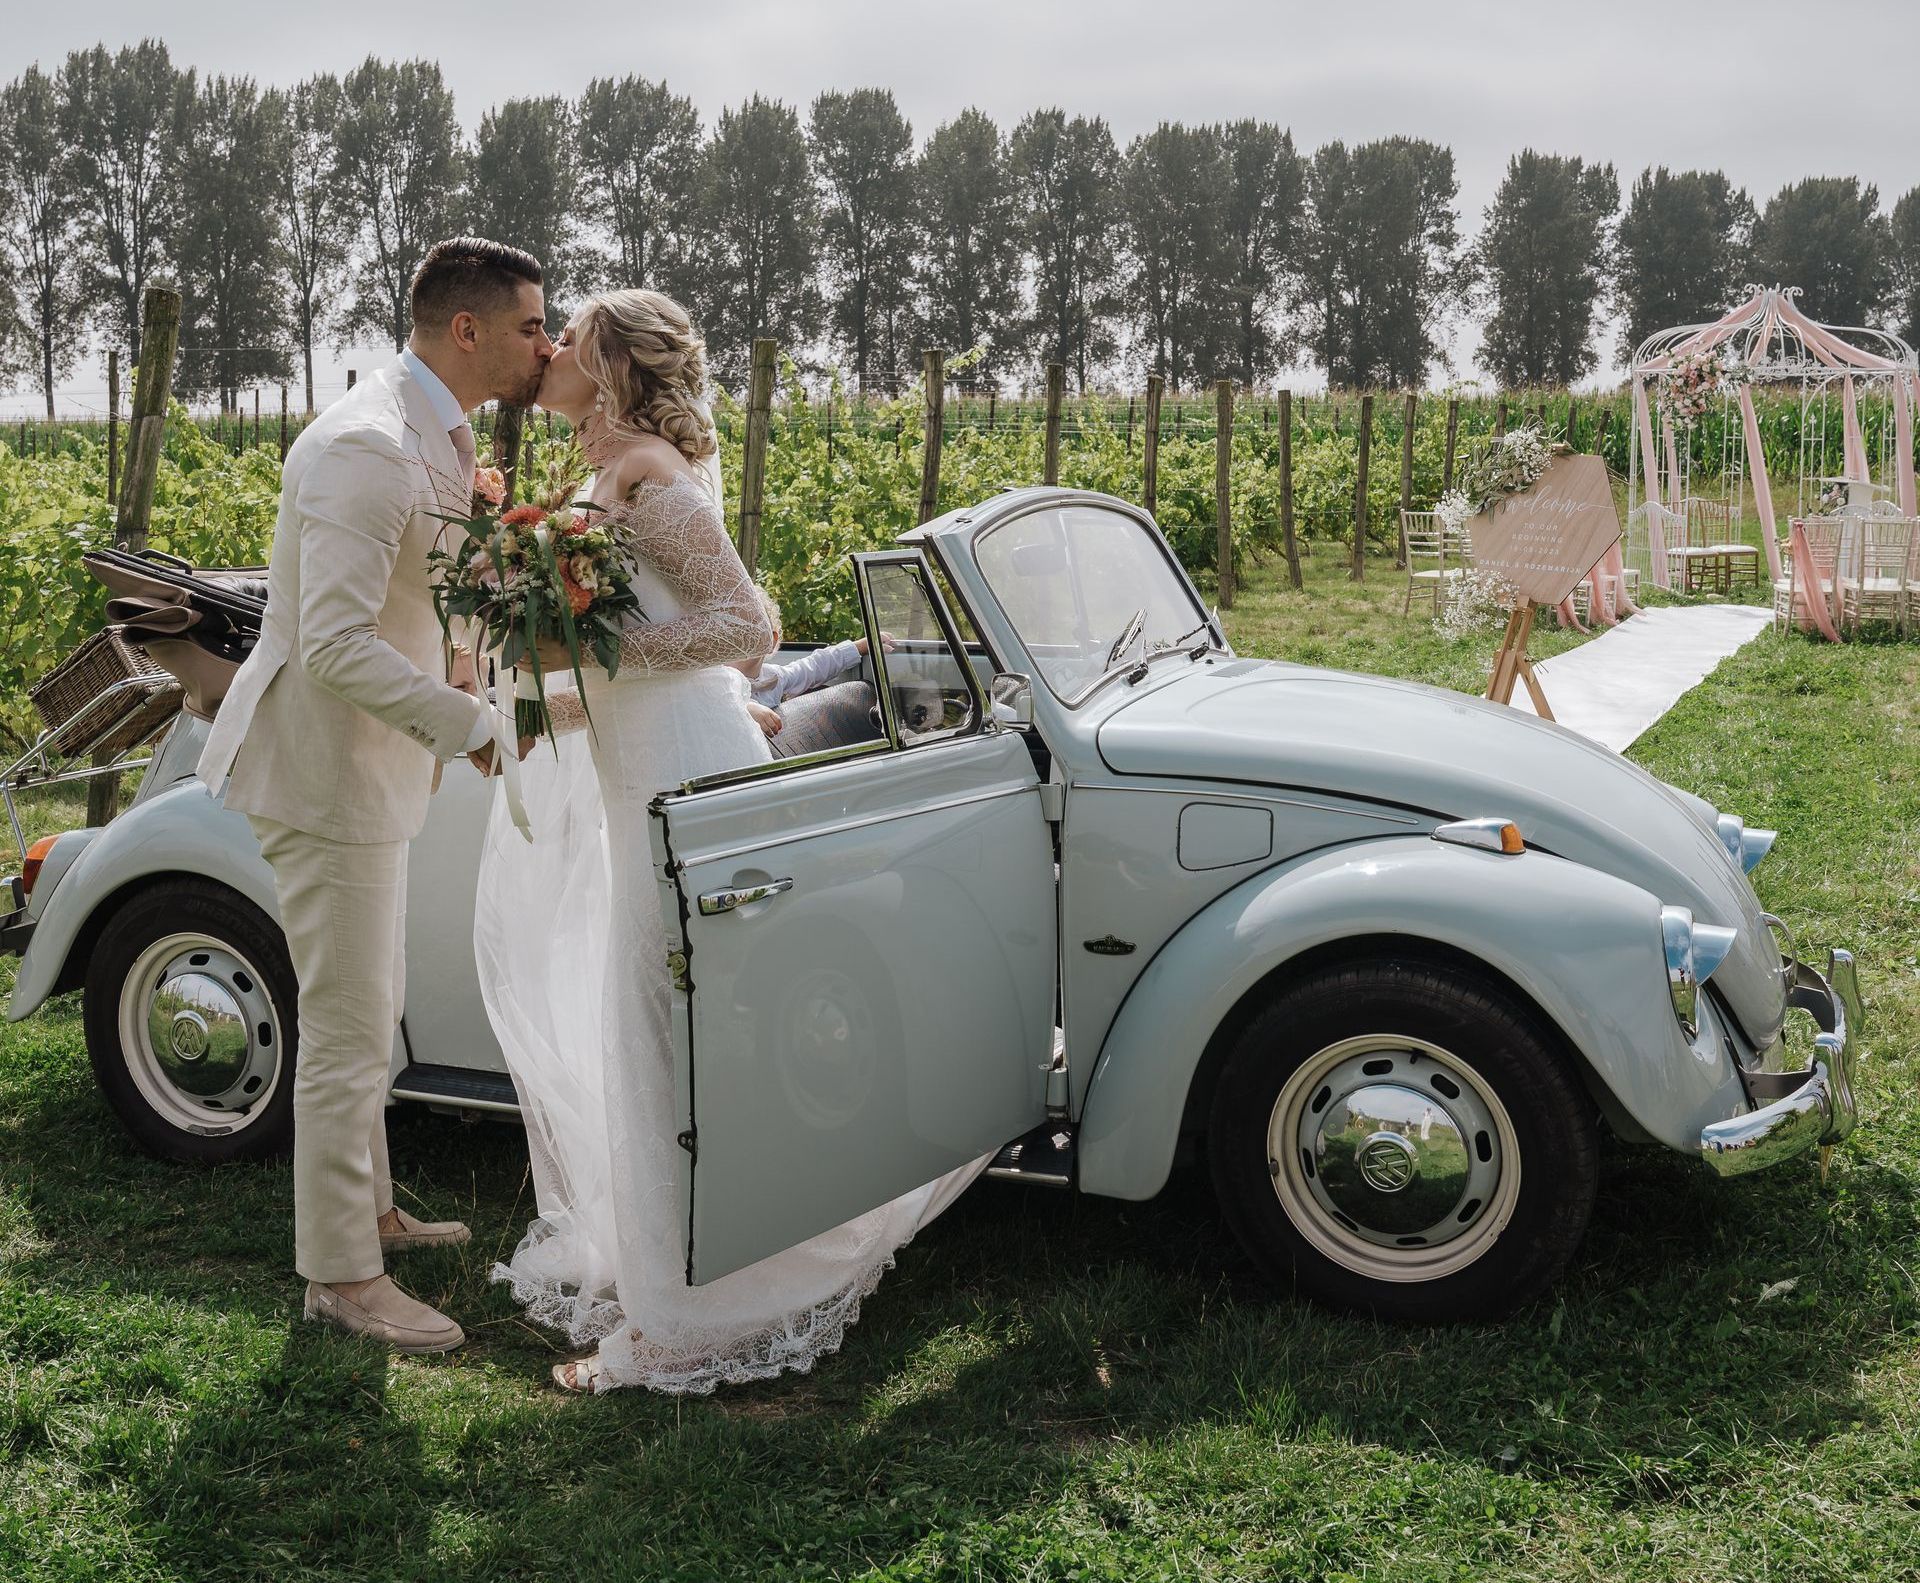 Ceremonie Italiaanse bruiloft wijngaard Smaak van Bilderhof Dordrecht Zuid-Holland
Celebrate your moment | wedding & event planner